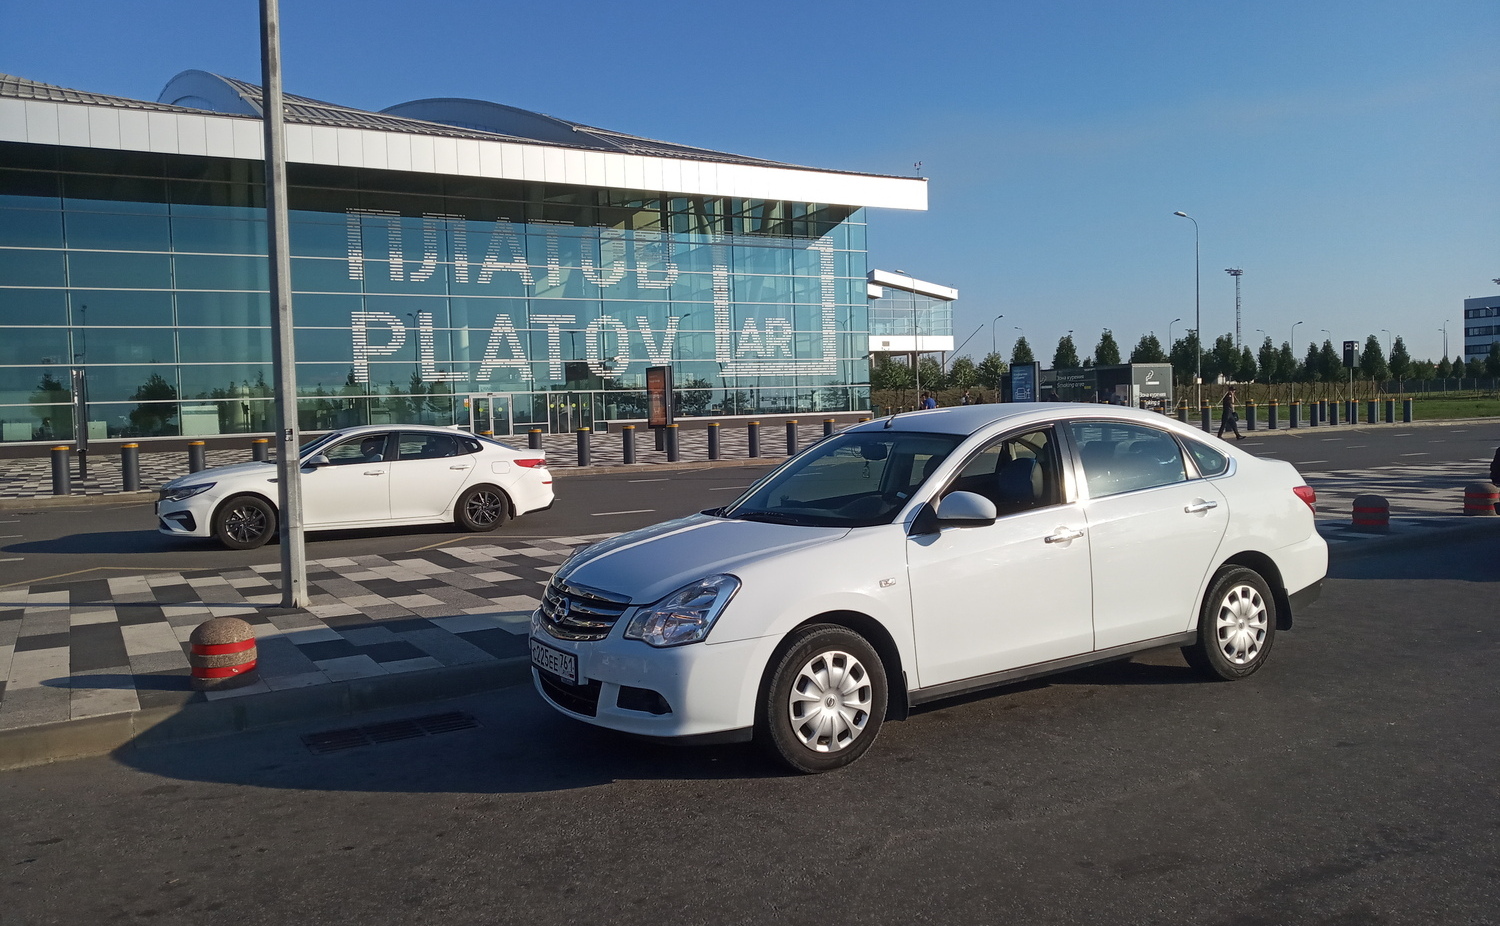 Ейск-аэропорт Платов